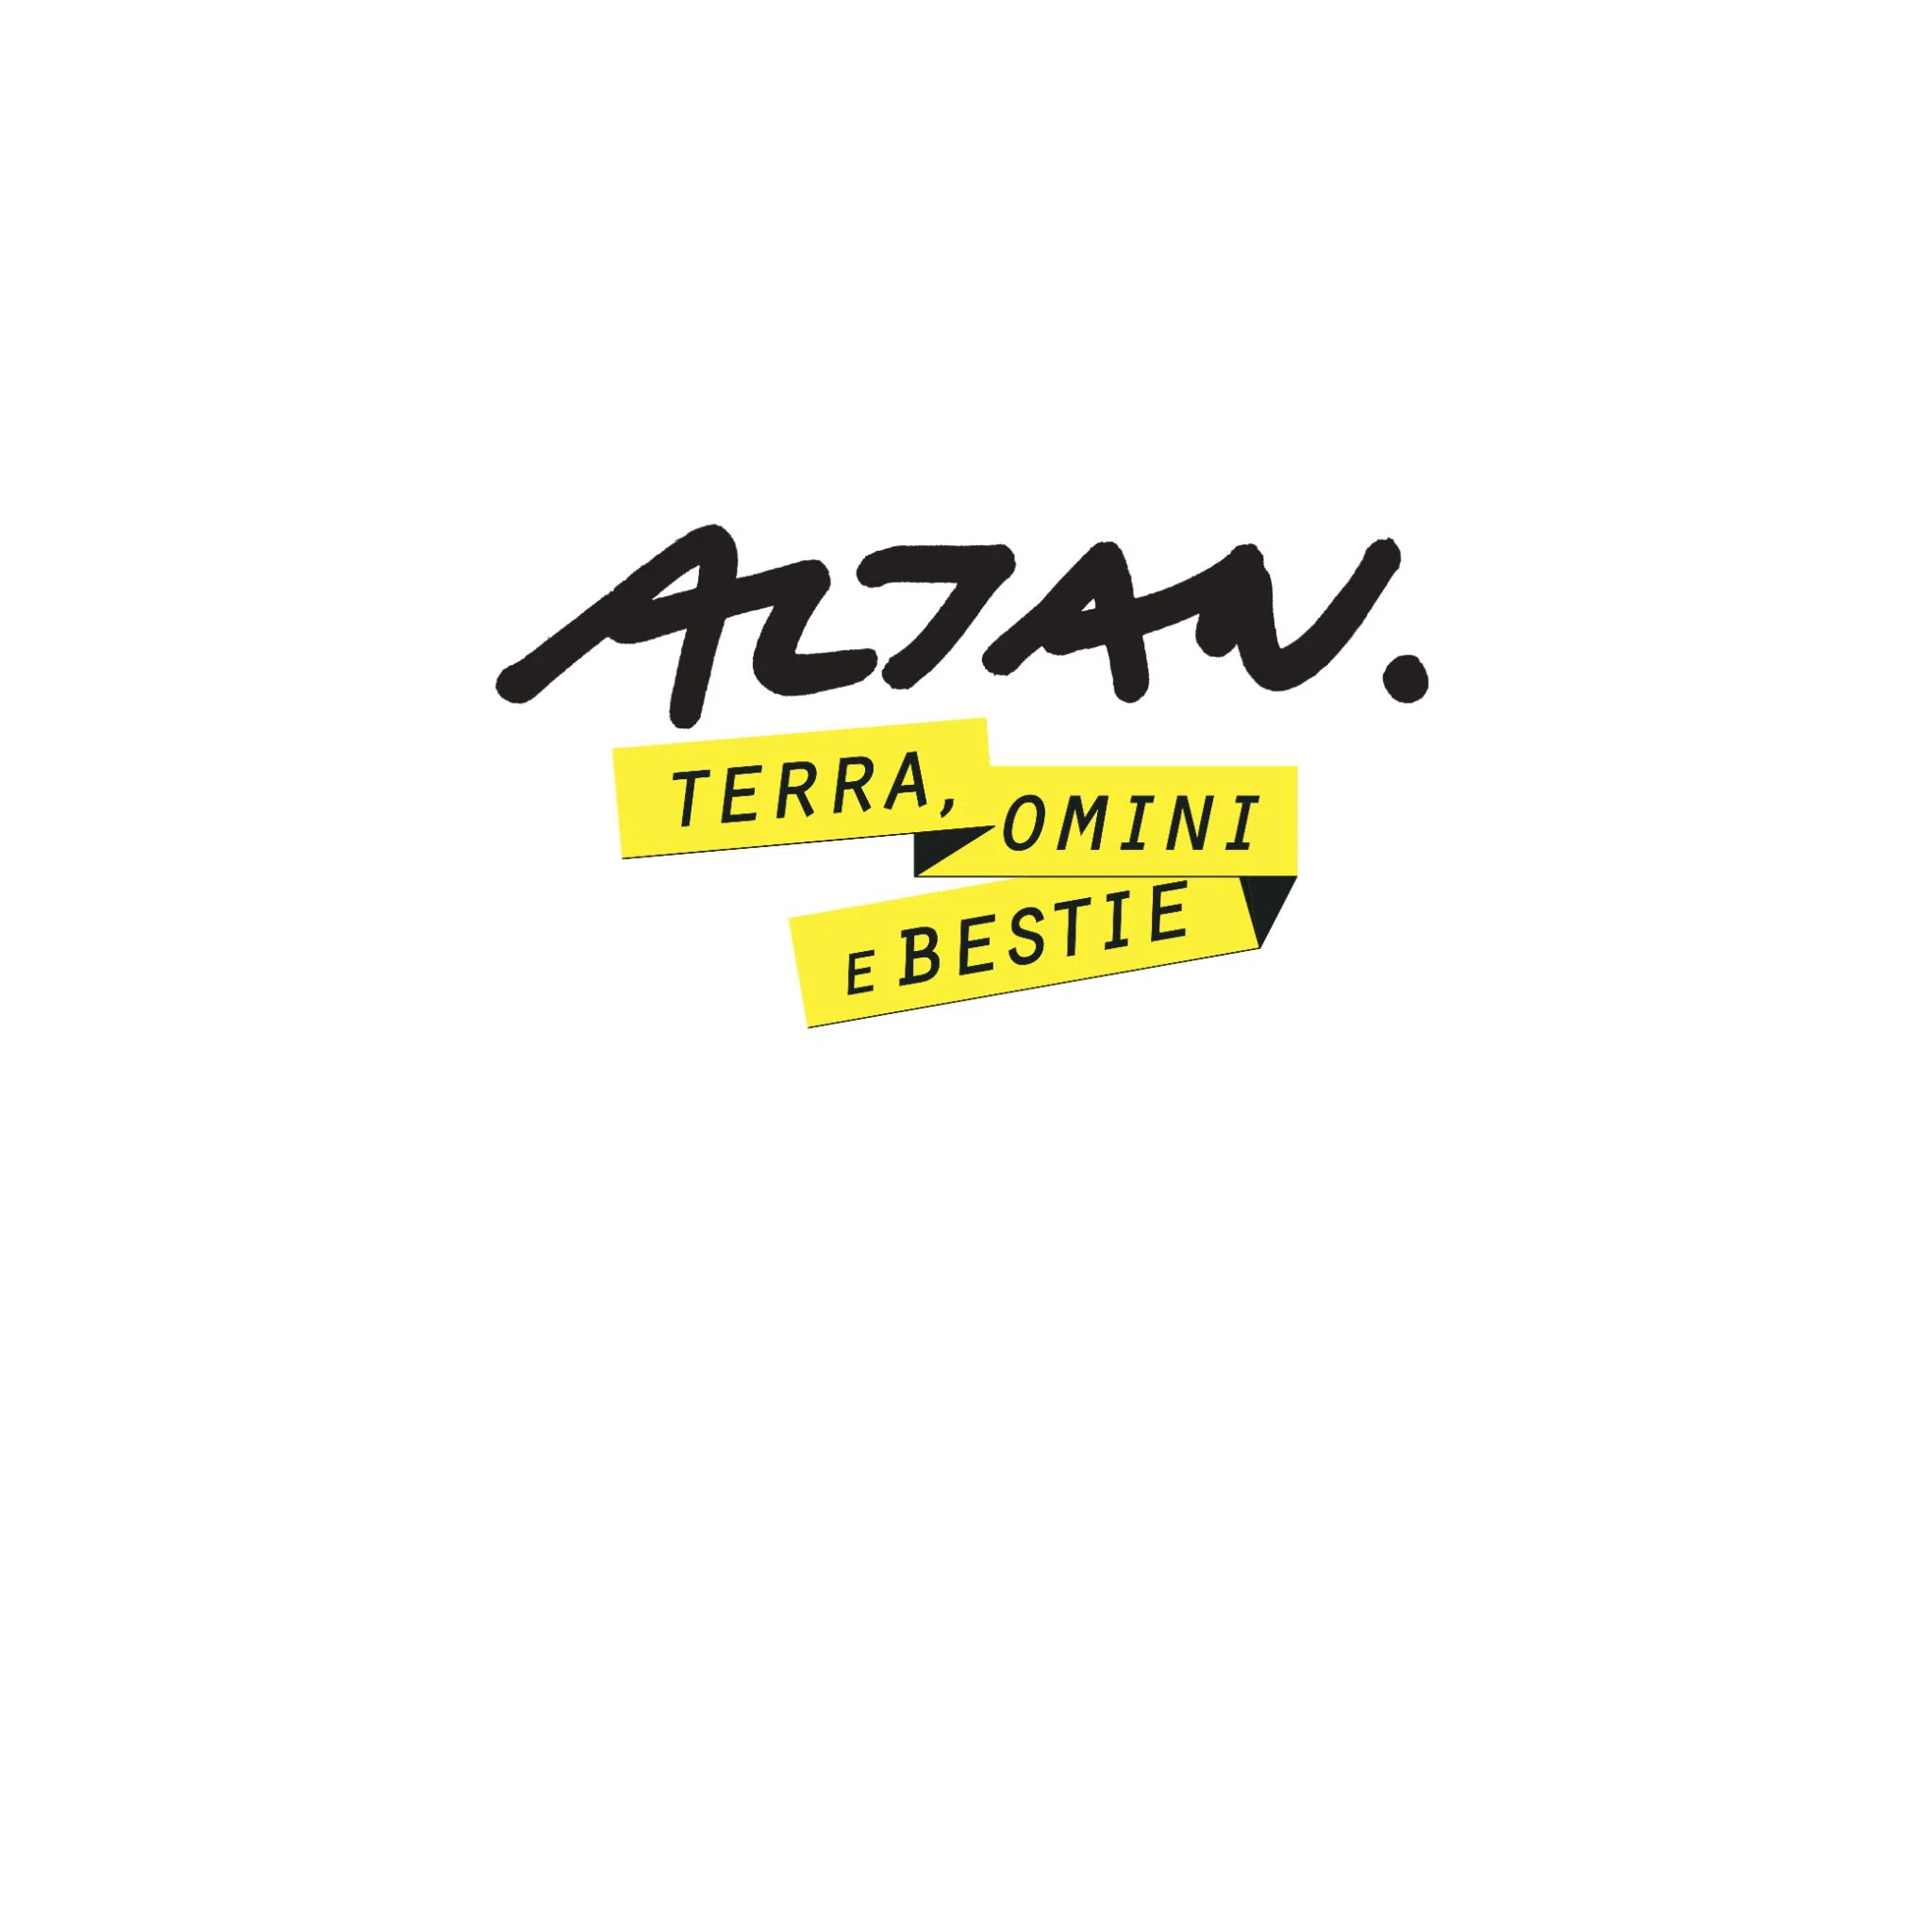 Altan_logotipo titolo mostra Tolmezzo_little.jpg